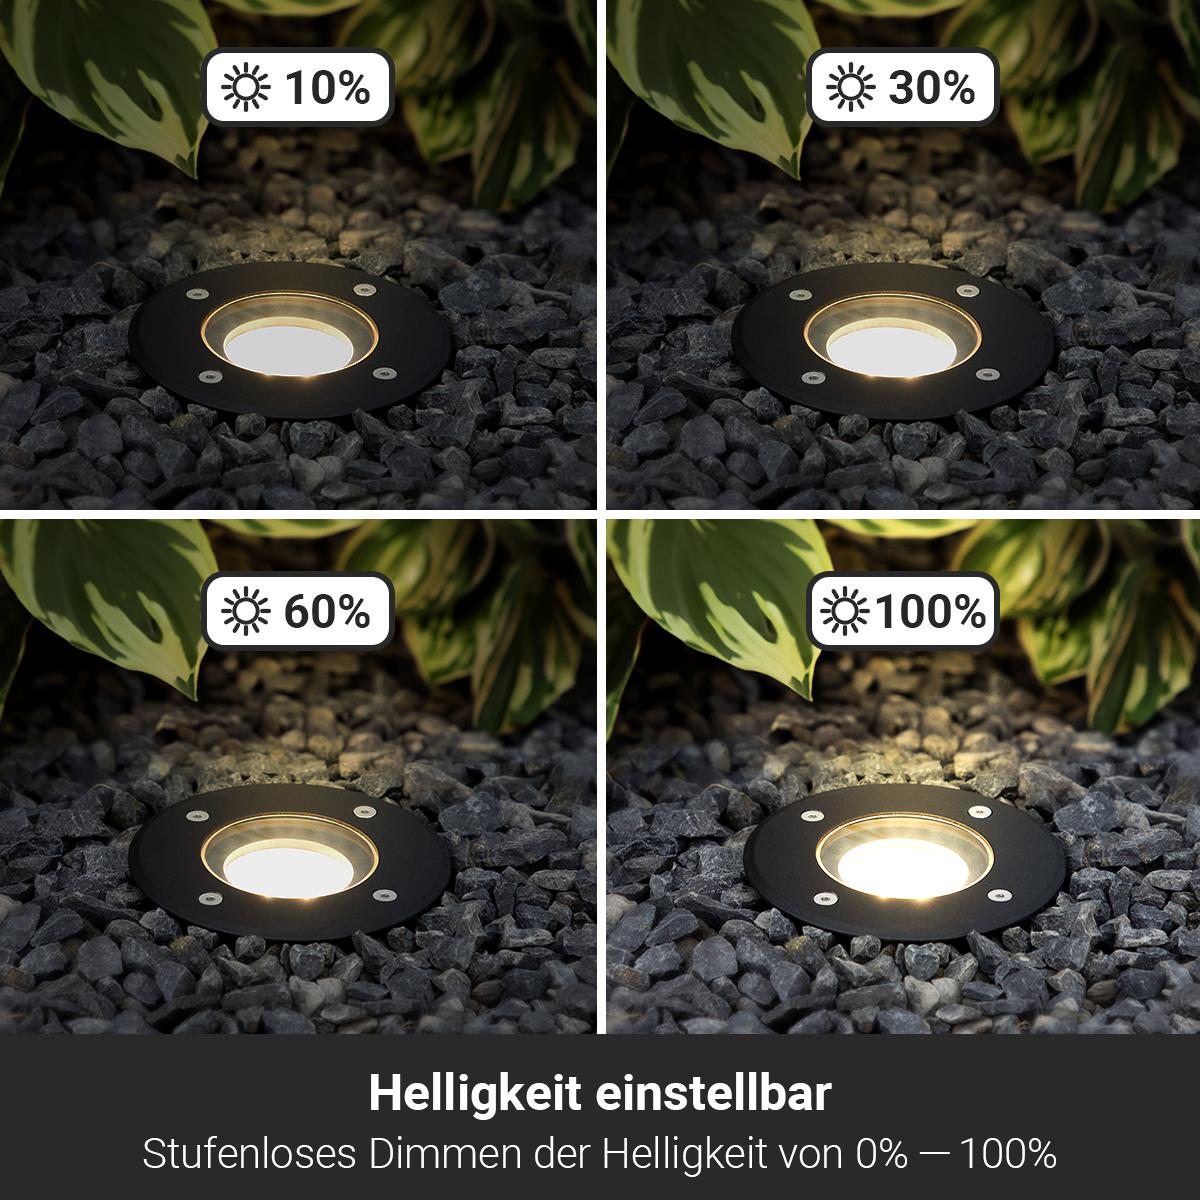 LED Bodeneinbaustrahler Schwarz rund 230V IP67 - Leuchtmittel: GU10 RGB+CCT DIMMBAR inkl. Fernbedienung - Anzahl: 1x